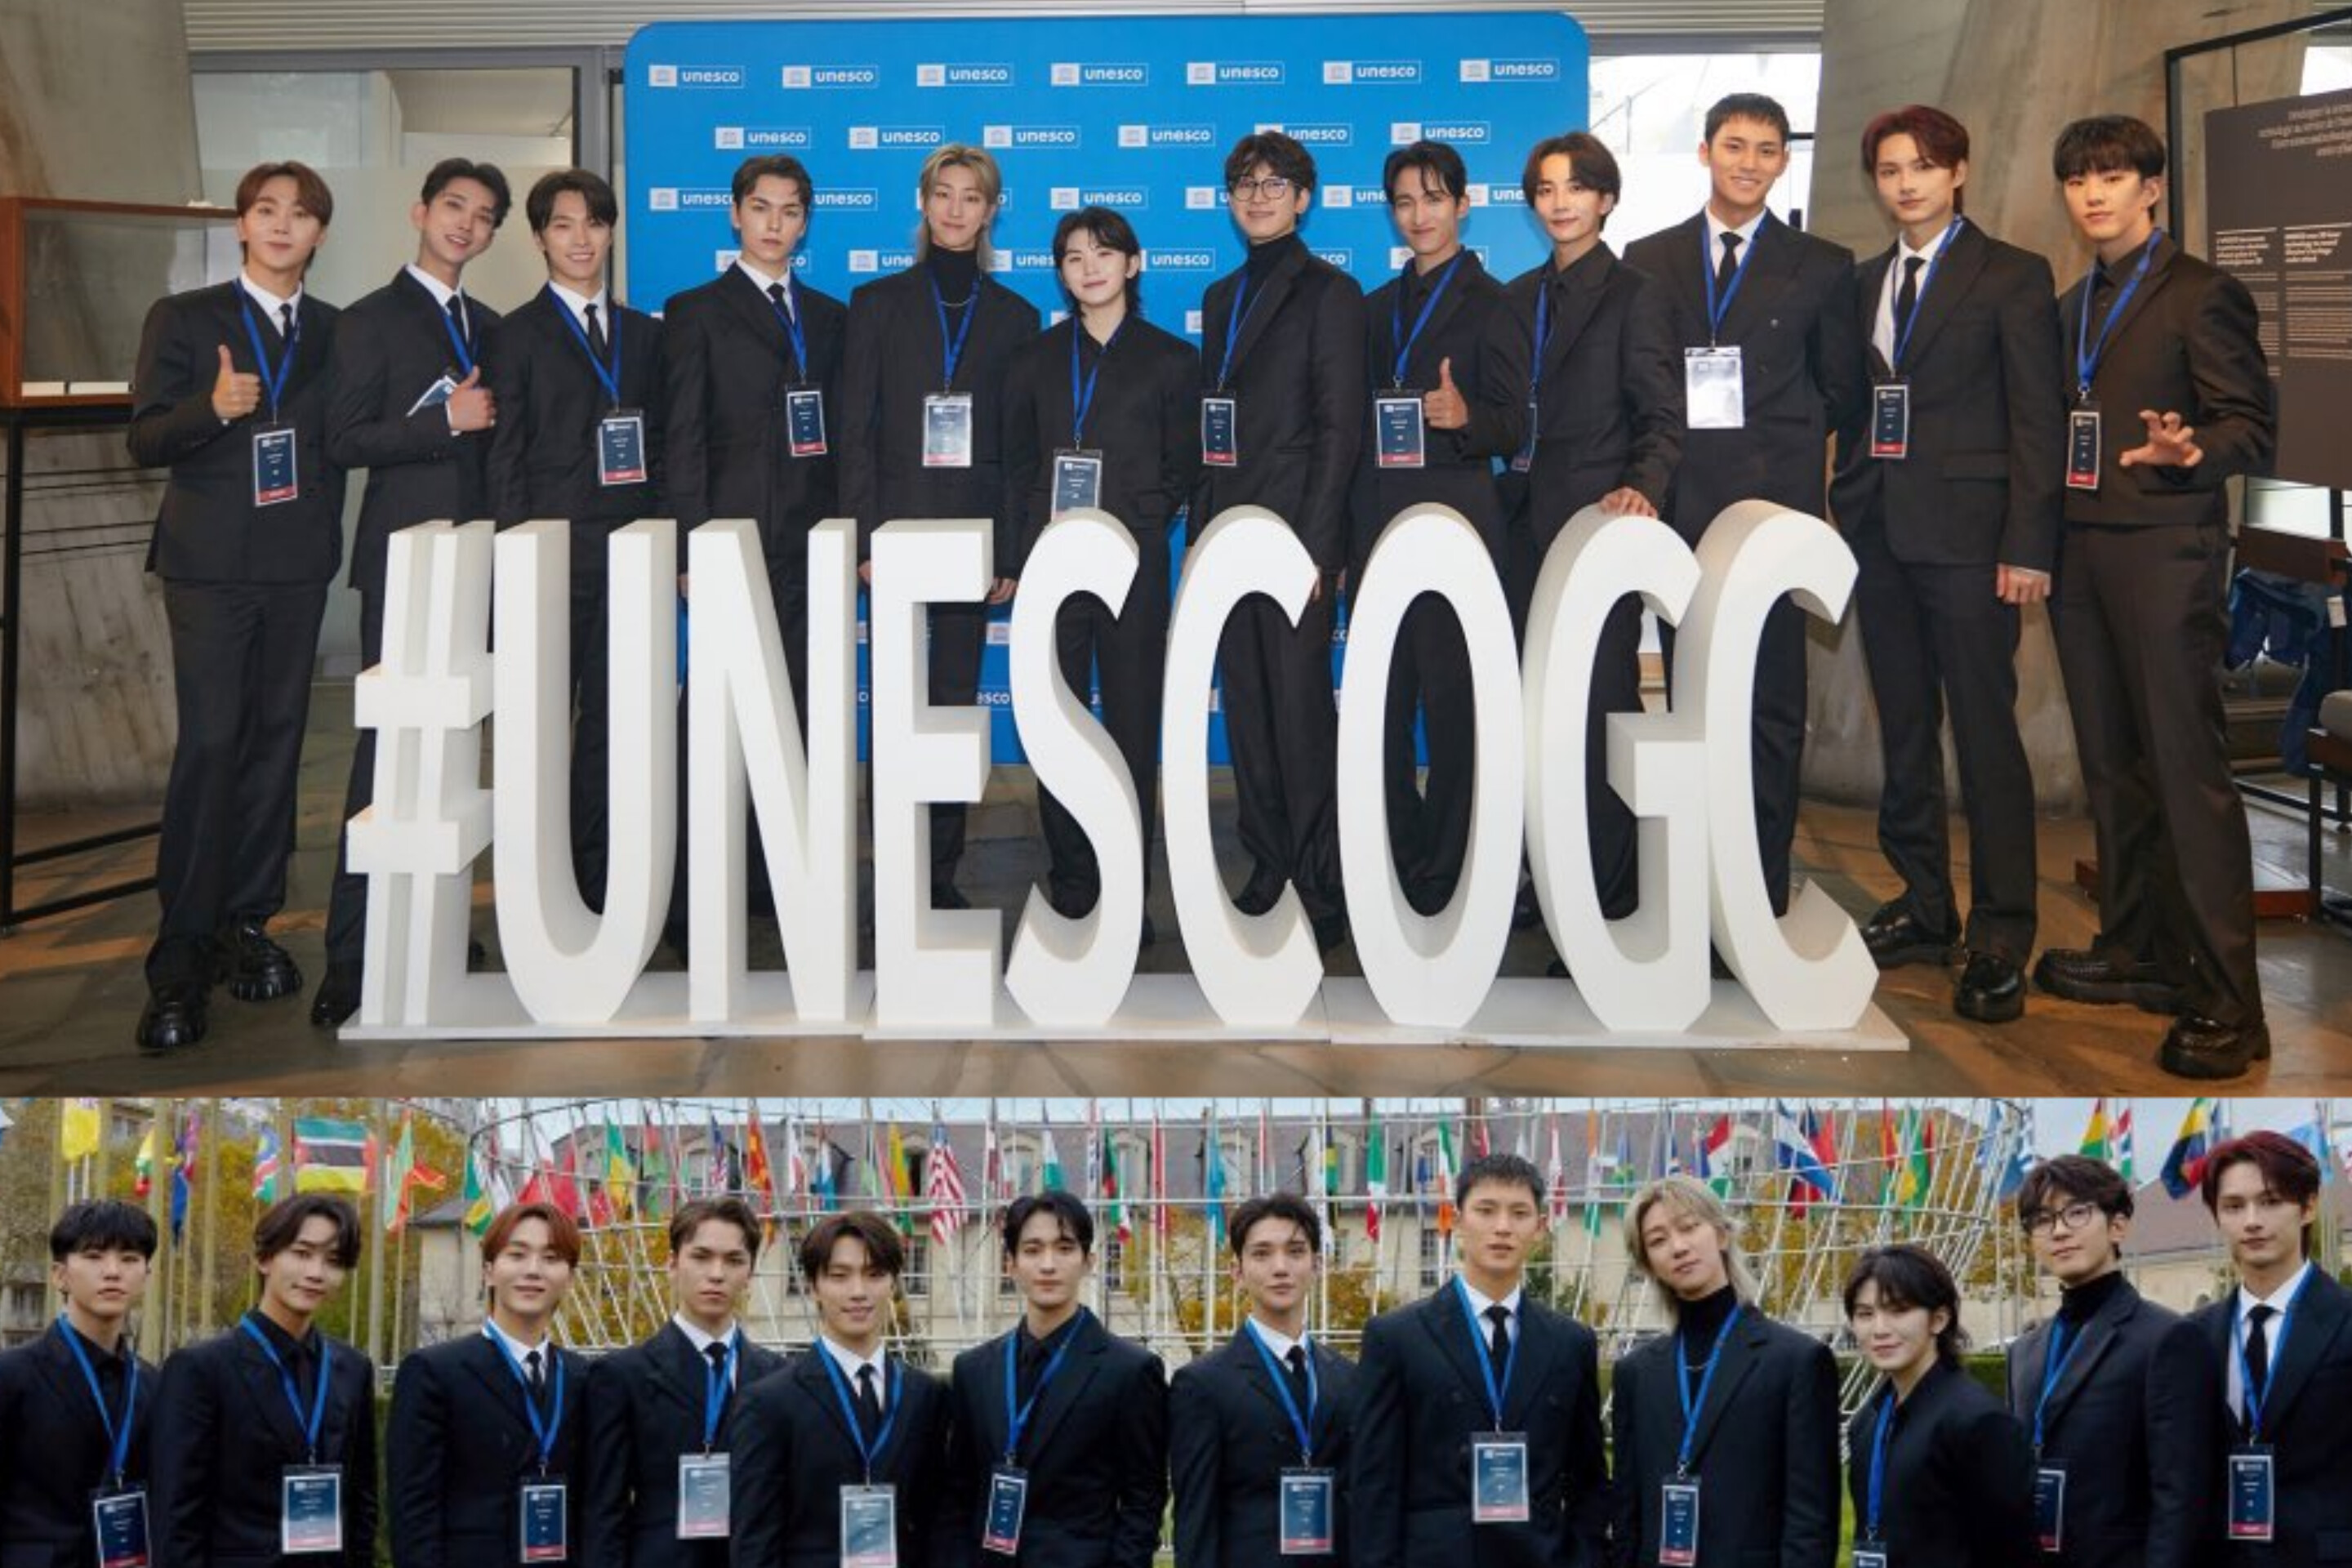 Seventeen Jadi Group K-Pop Pertama yang Berpidato di Forum Pemuda UNESCO